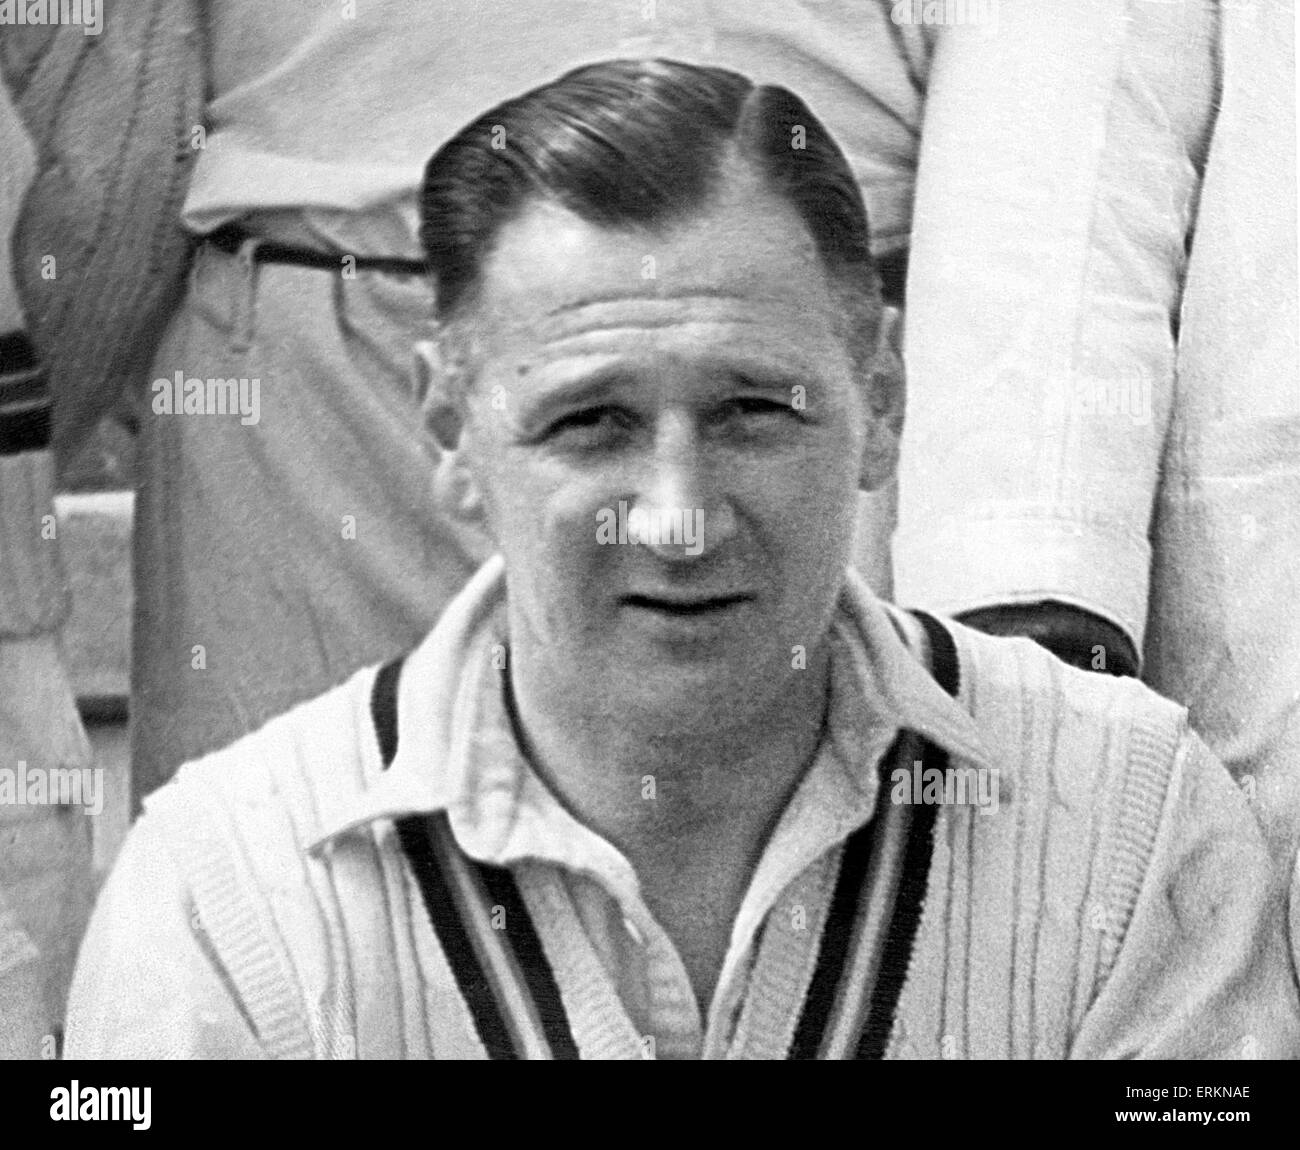 William Eric Houghton (29 juin 1910 - 1 mai 1996) était un footballeur anglais, et manager. Eric Houghton est né à Billingborough Lincolnshire et éduqué à Donington Grammar School. Il a signé pour Aston Villa comme un garçon de dix-sept ans et a joué dans la vi Banque D'Images